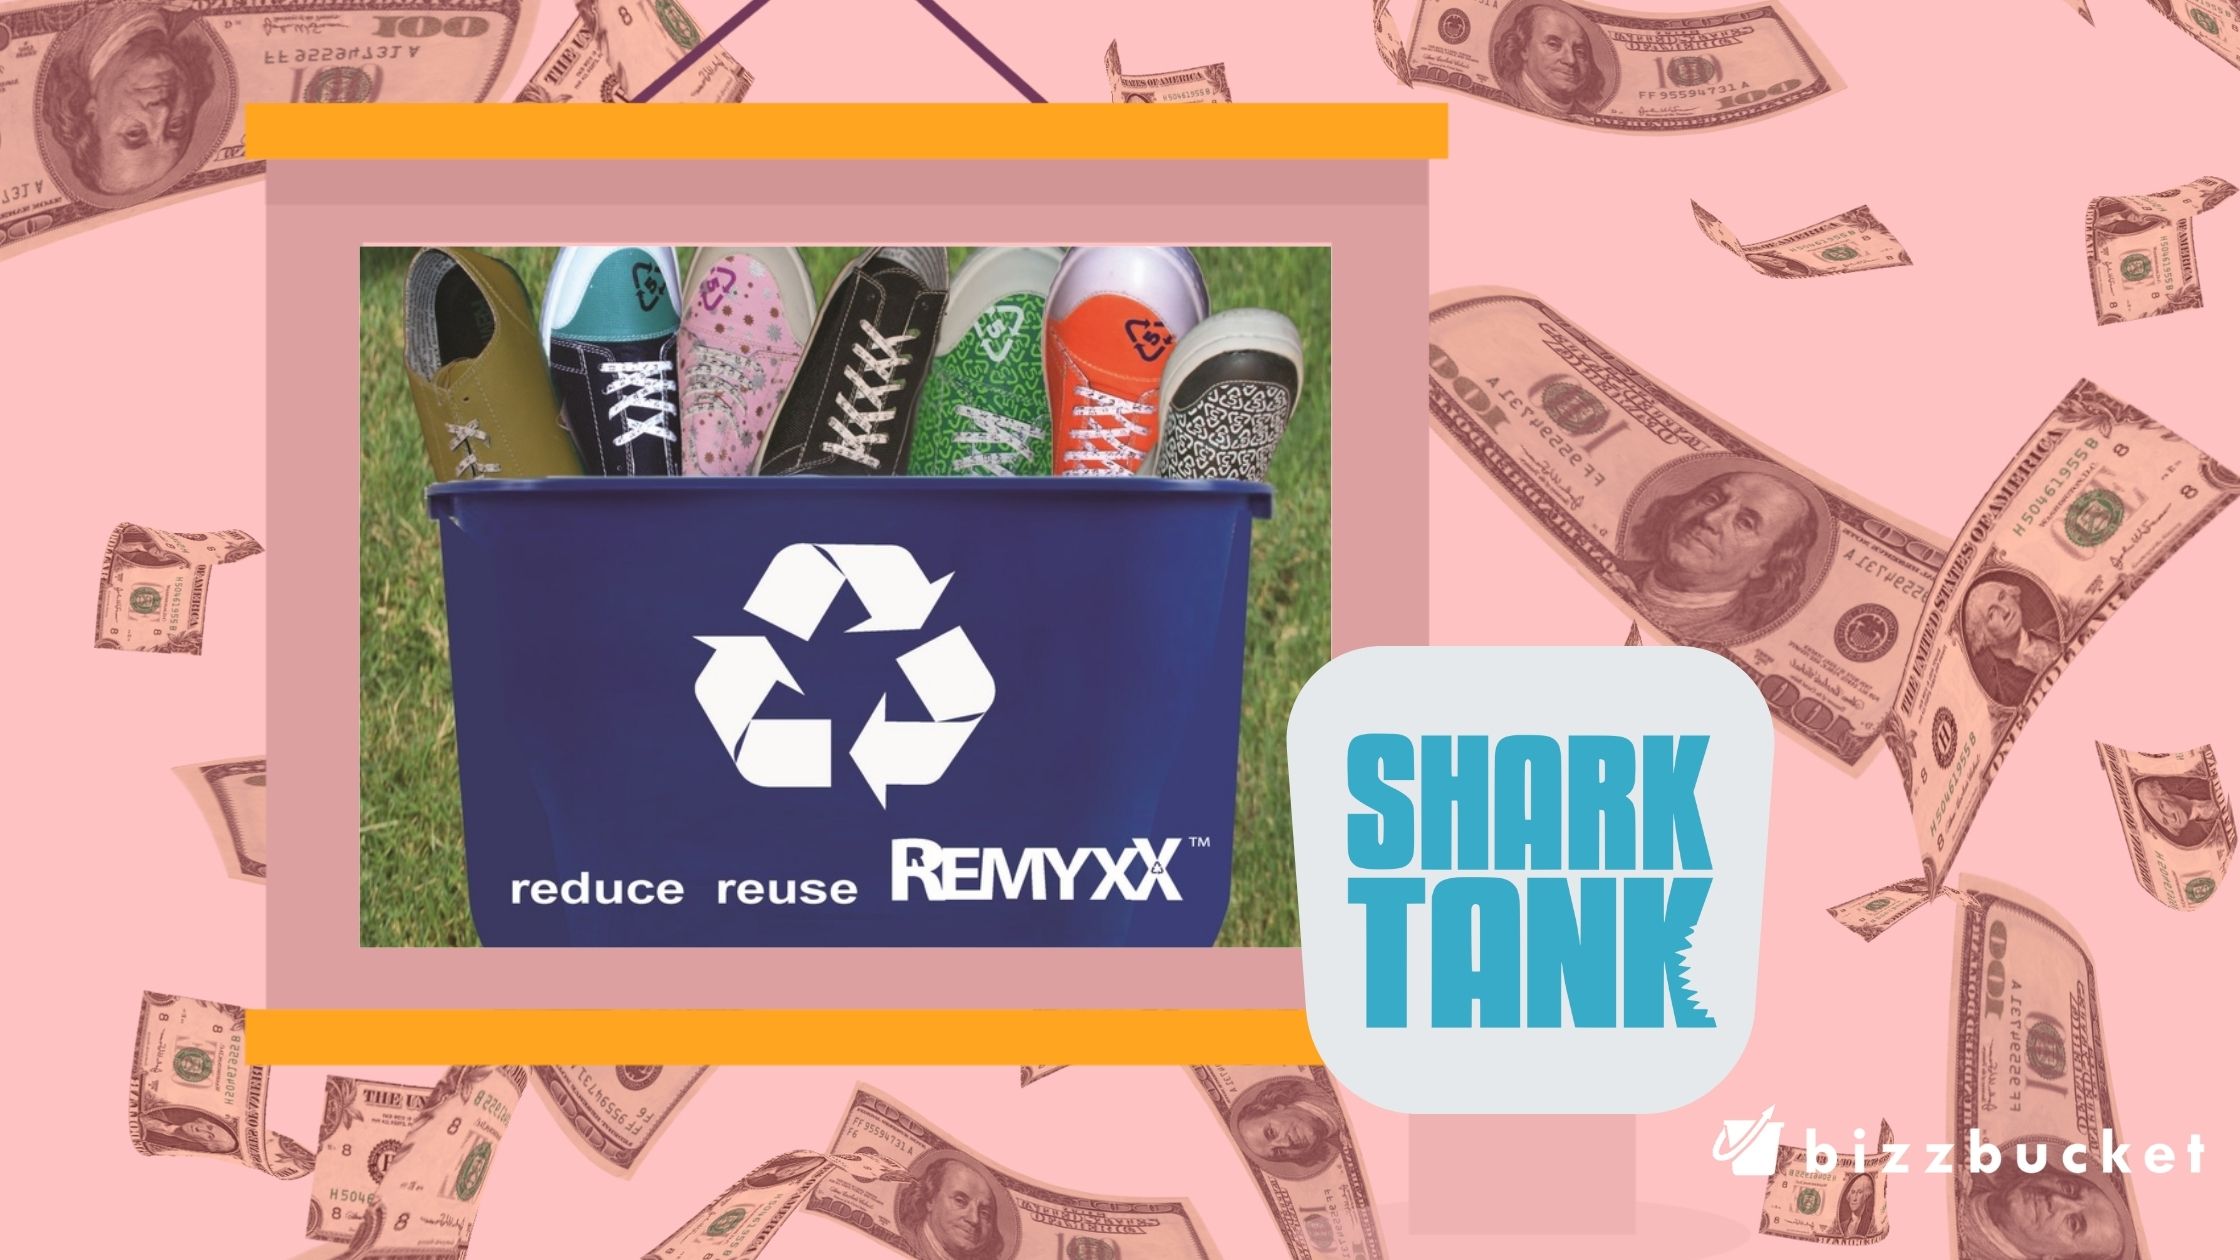 Remyxx shark tank update